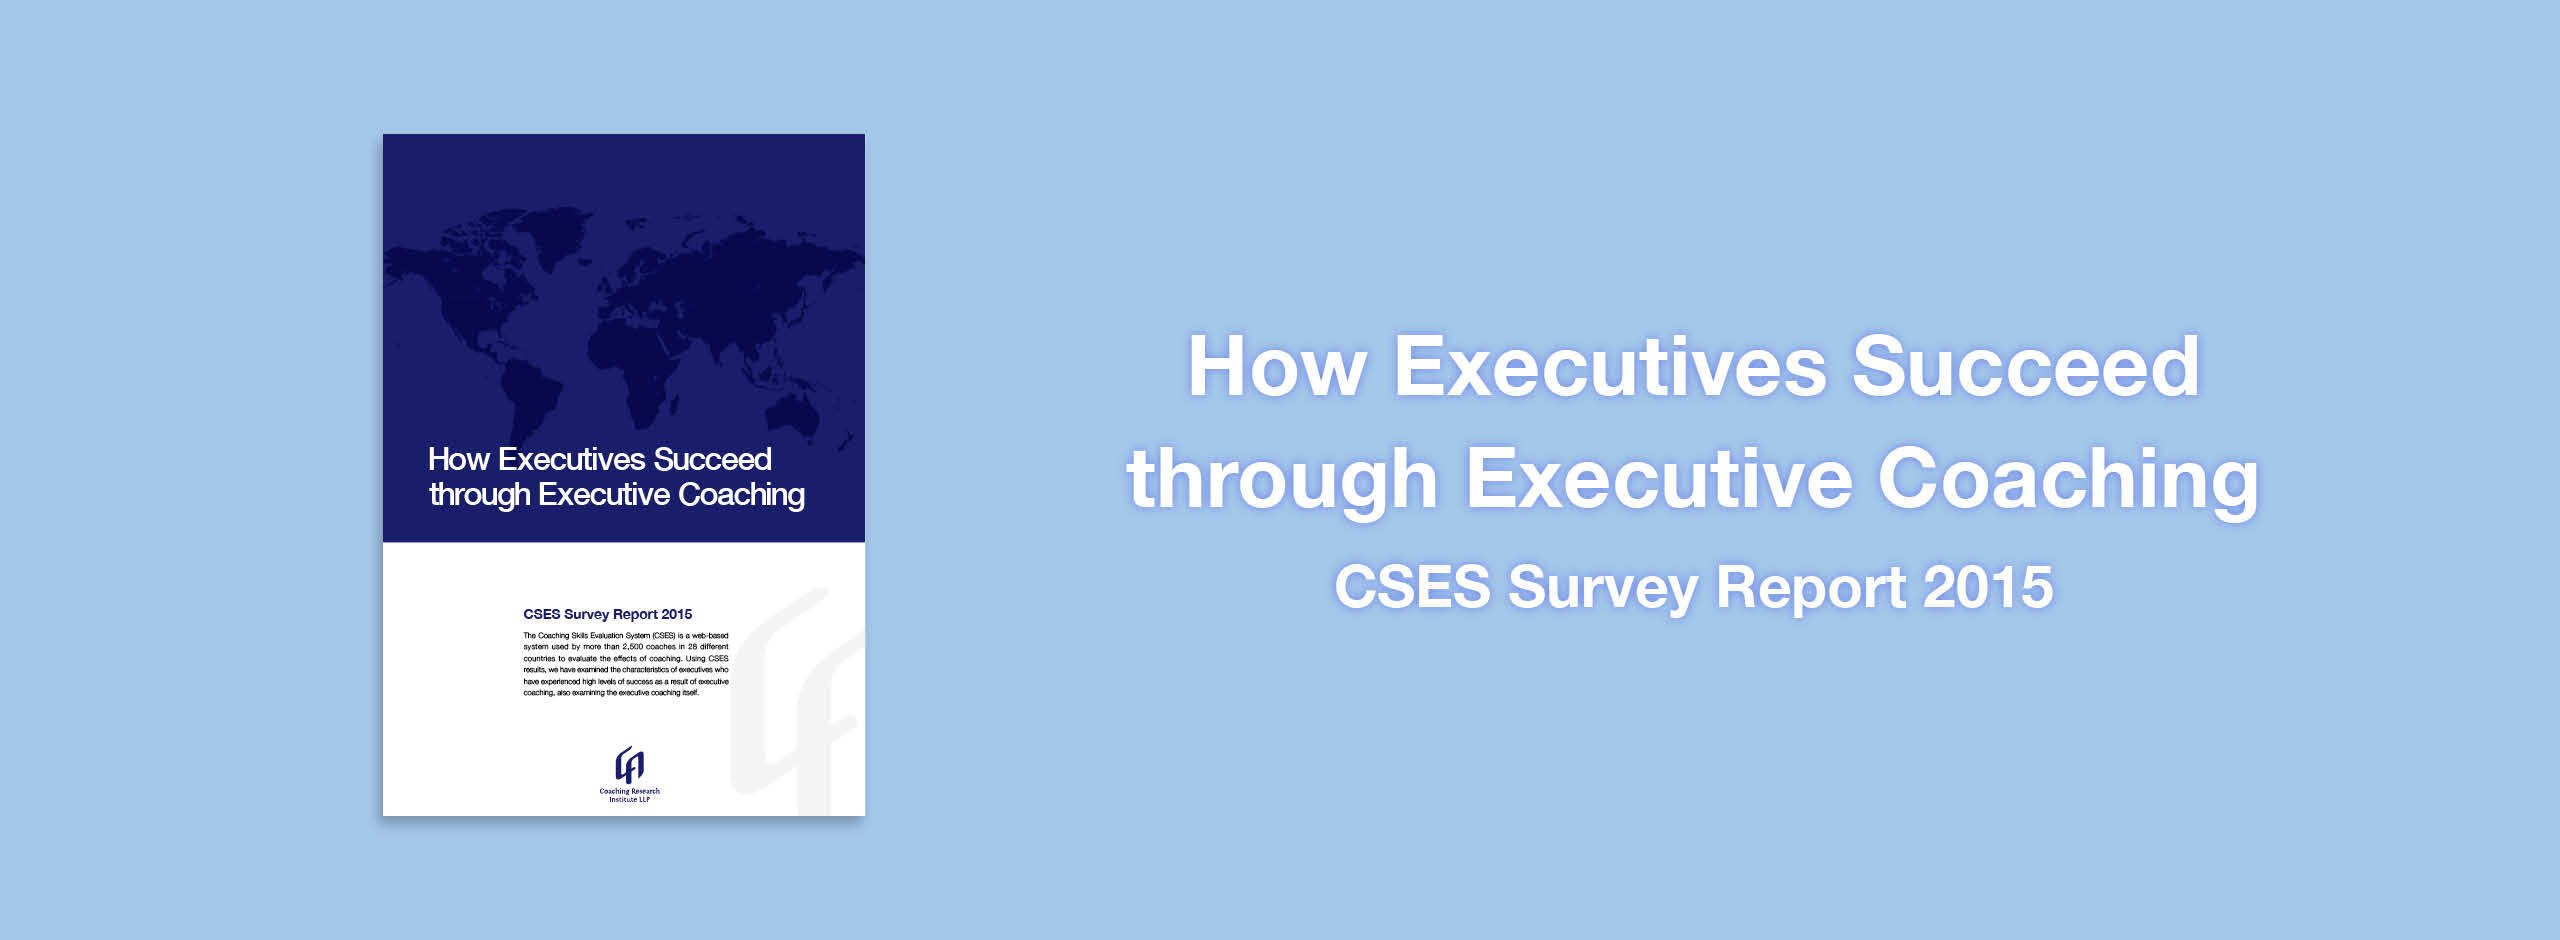 How Executives Succeed through Executive Coaching